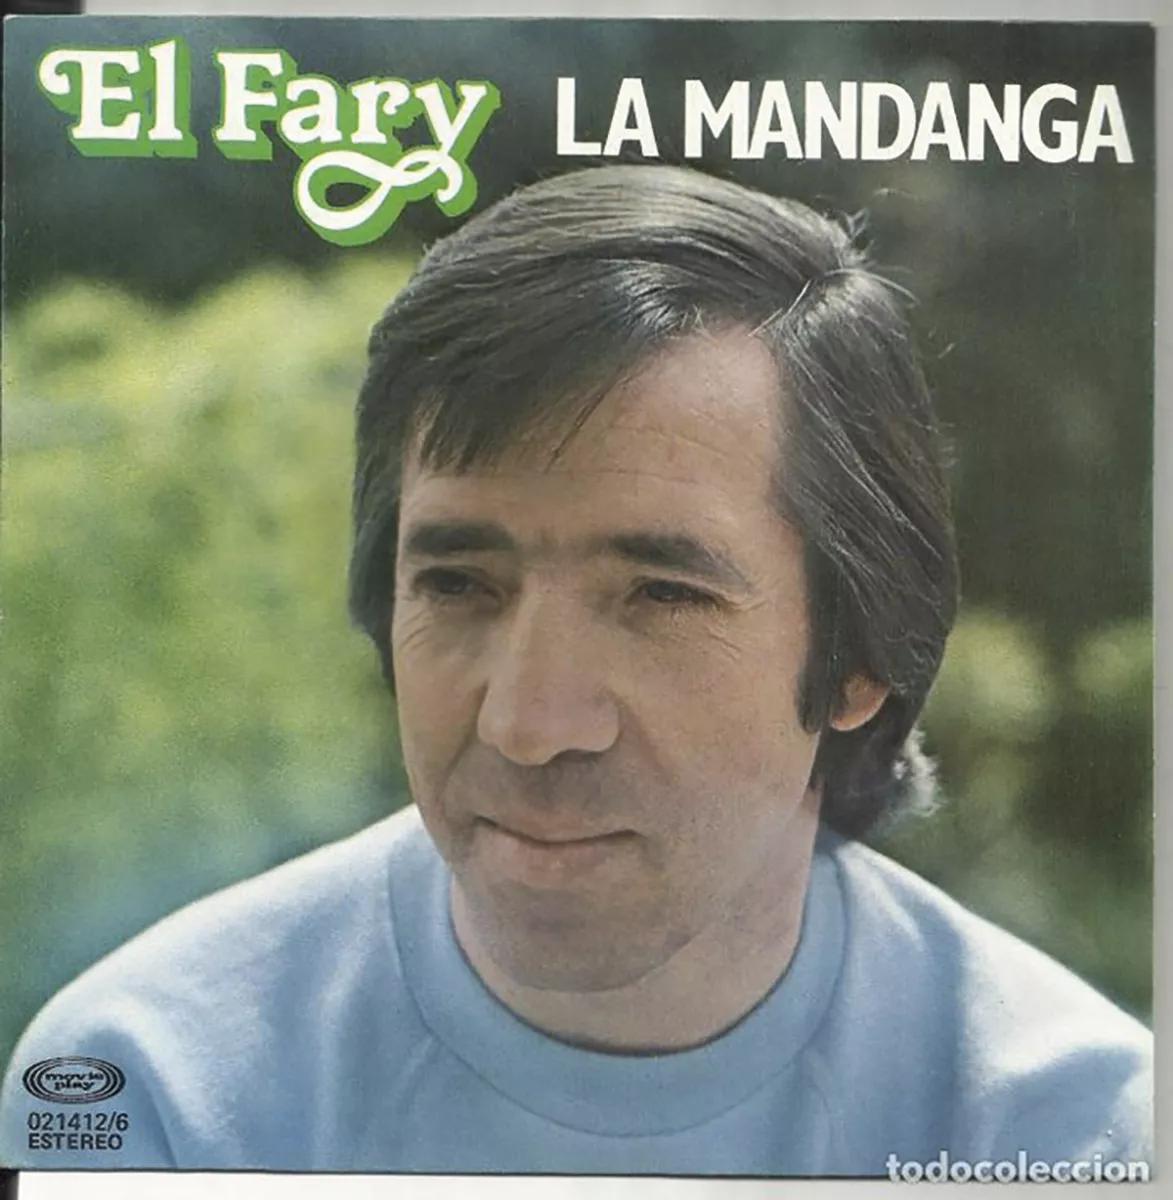 El Fary